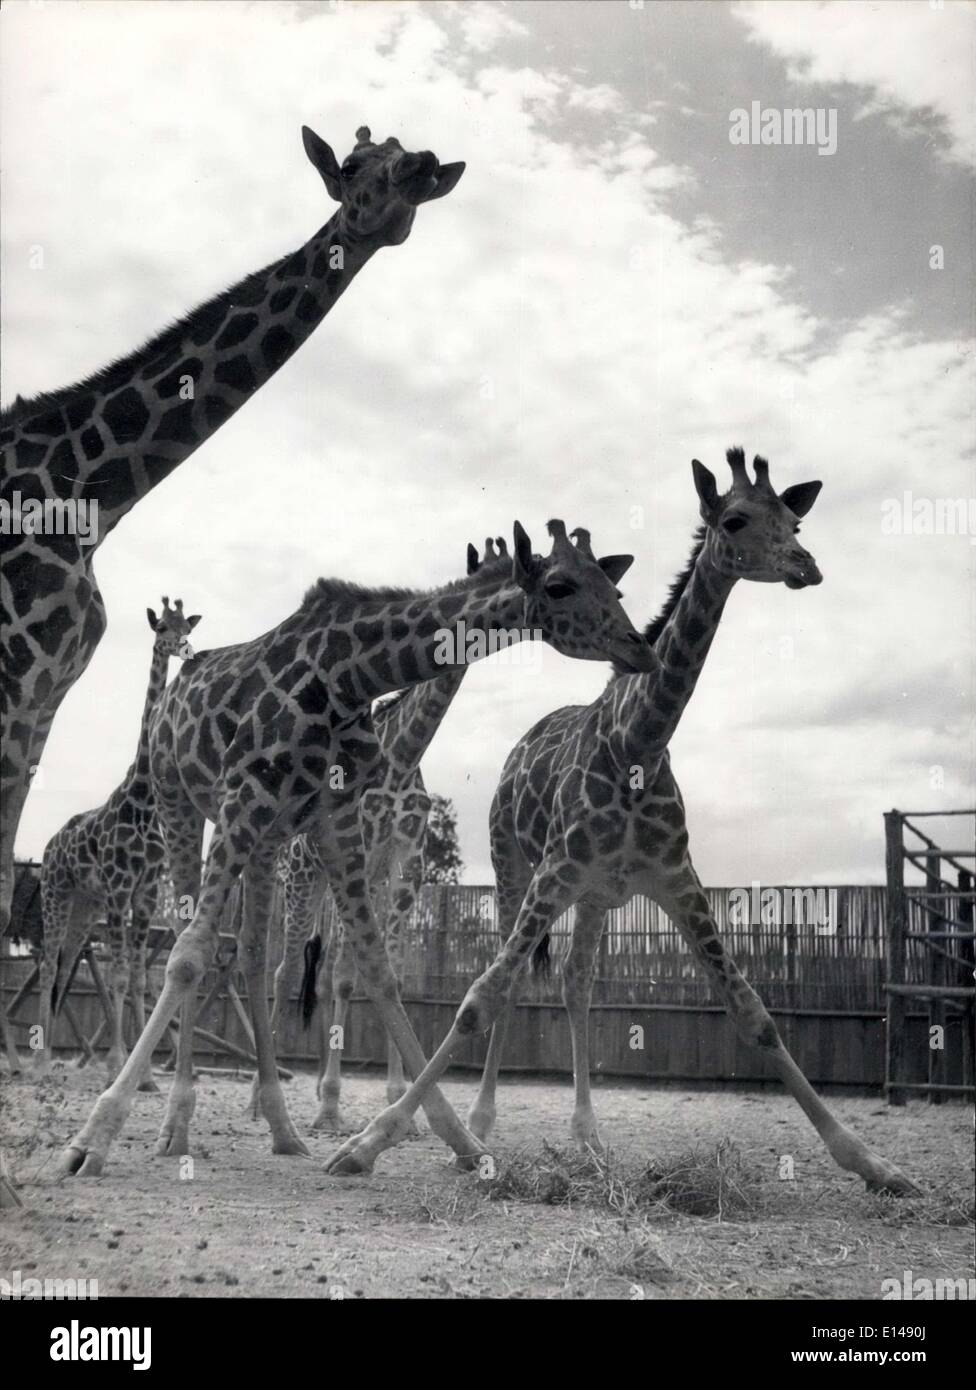 17. April 2012 - zwei-Wege-Stretch - oder. Der nächste eine Giraffe kann man den Spagat: Trotz ihrer Größe und normalerweise würdevolles Aussehen, Giraffen, sind in der Tat überraschend geschmeidig - bemuskelt, wenn sie neugierig werden können sie wirklich für peering runter. Auf Carr Hartleys Farm der Tiere in Kenia gibt es immer eine Herde in einem Gehäuse, noch nicht verschickt, zoologischen Sammlungen im Ausland. Mau Mau Probleme haben diese Kenia Export kaum beeinträchtigt. Stockfoto